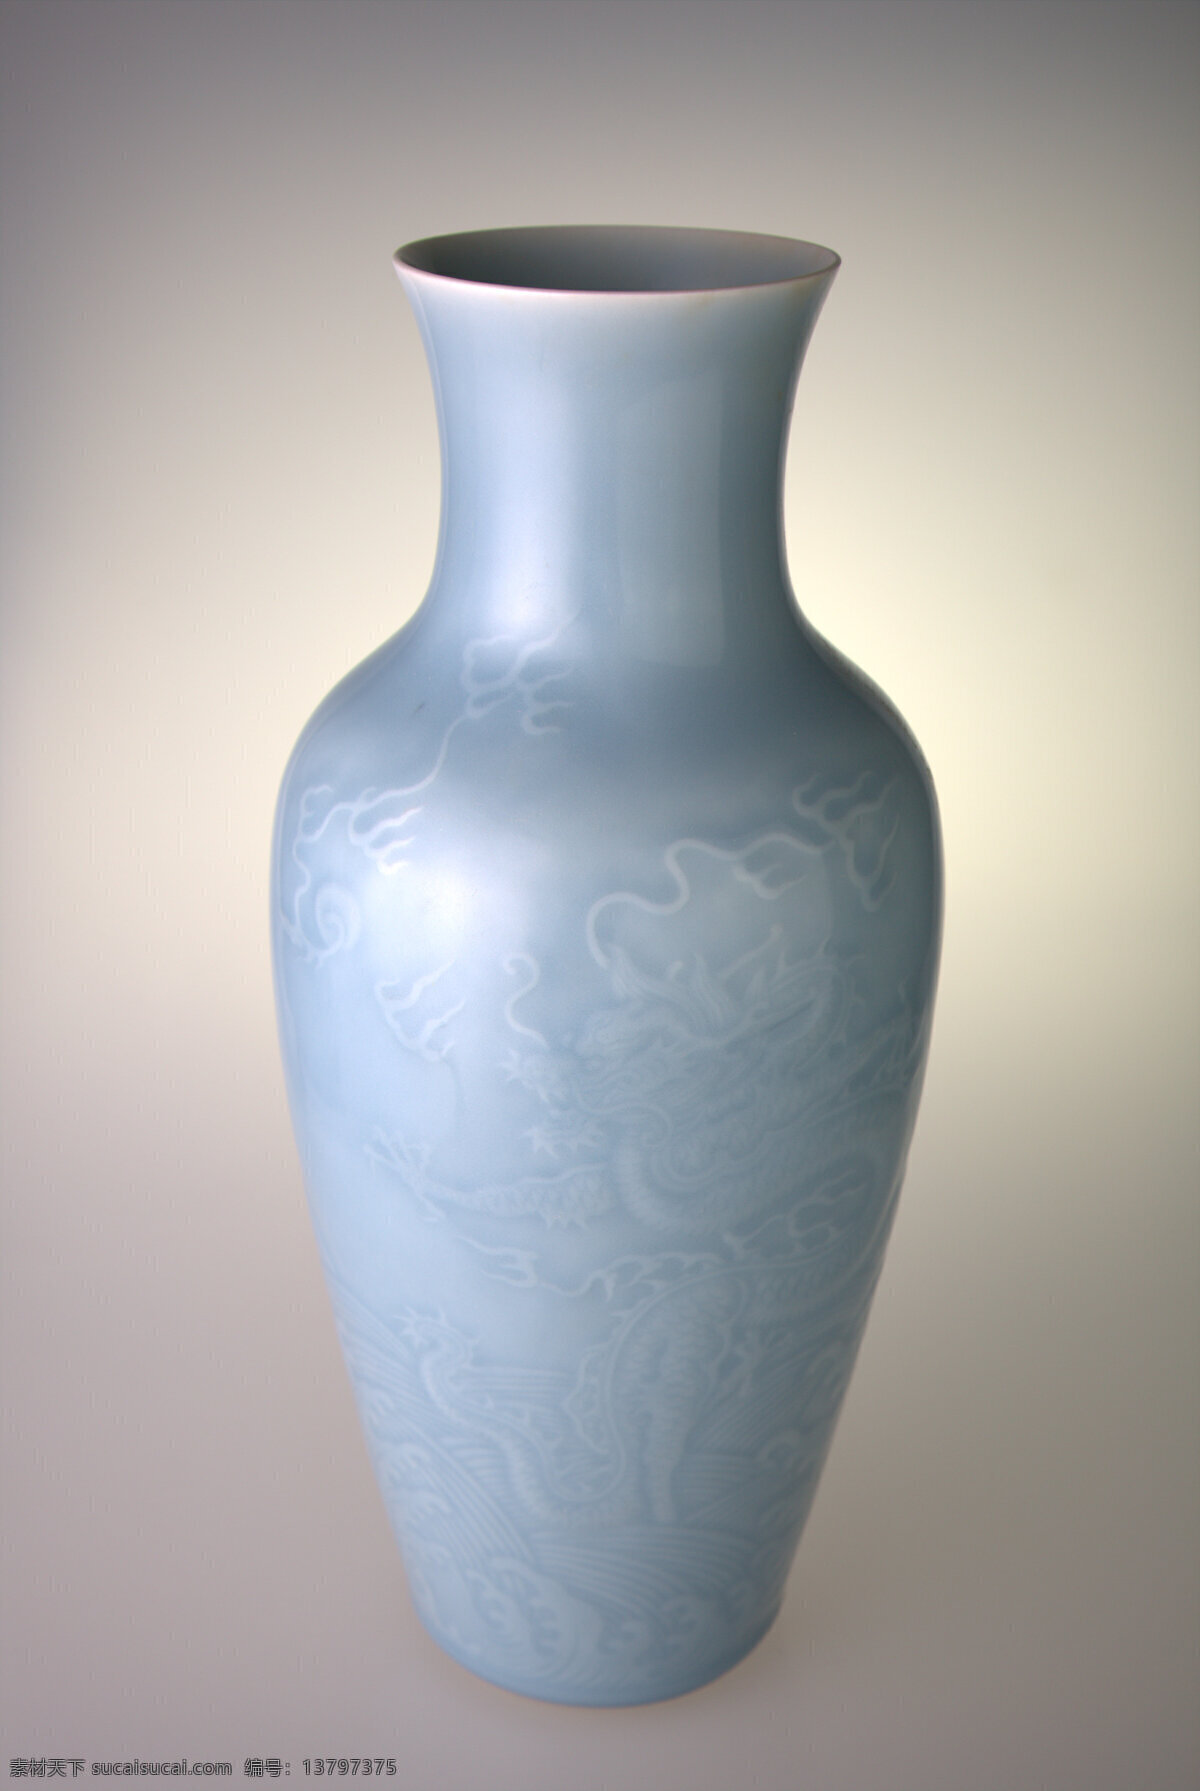 古董 瓷器 瓶 文物 精美 华丽 器皿 中国传统 传统文化 国宝 中国风 文化艺术